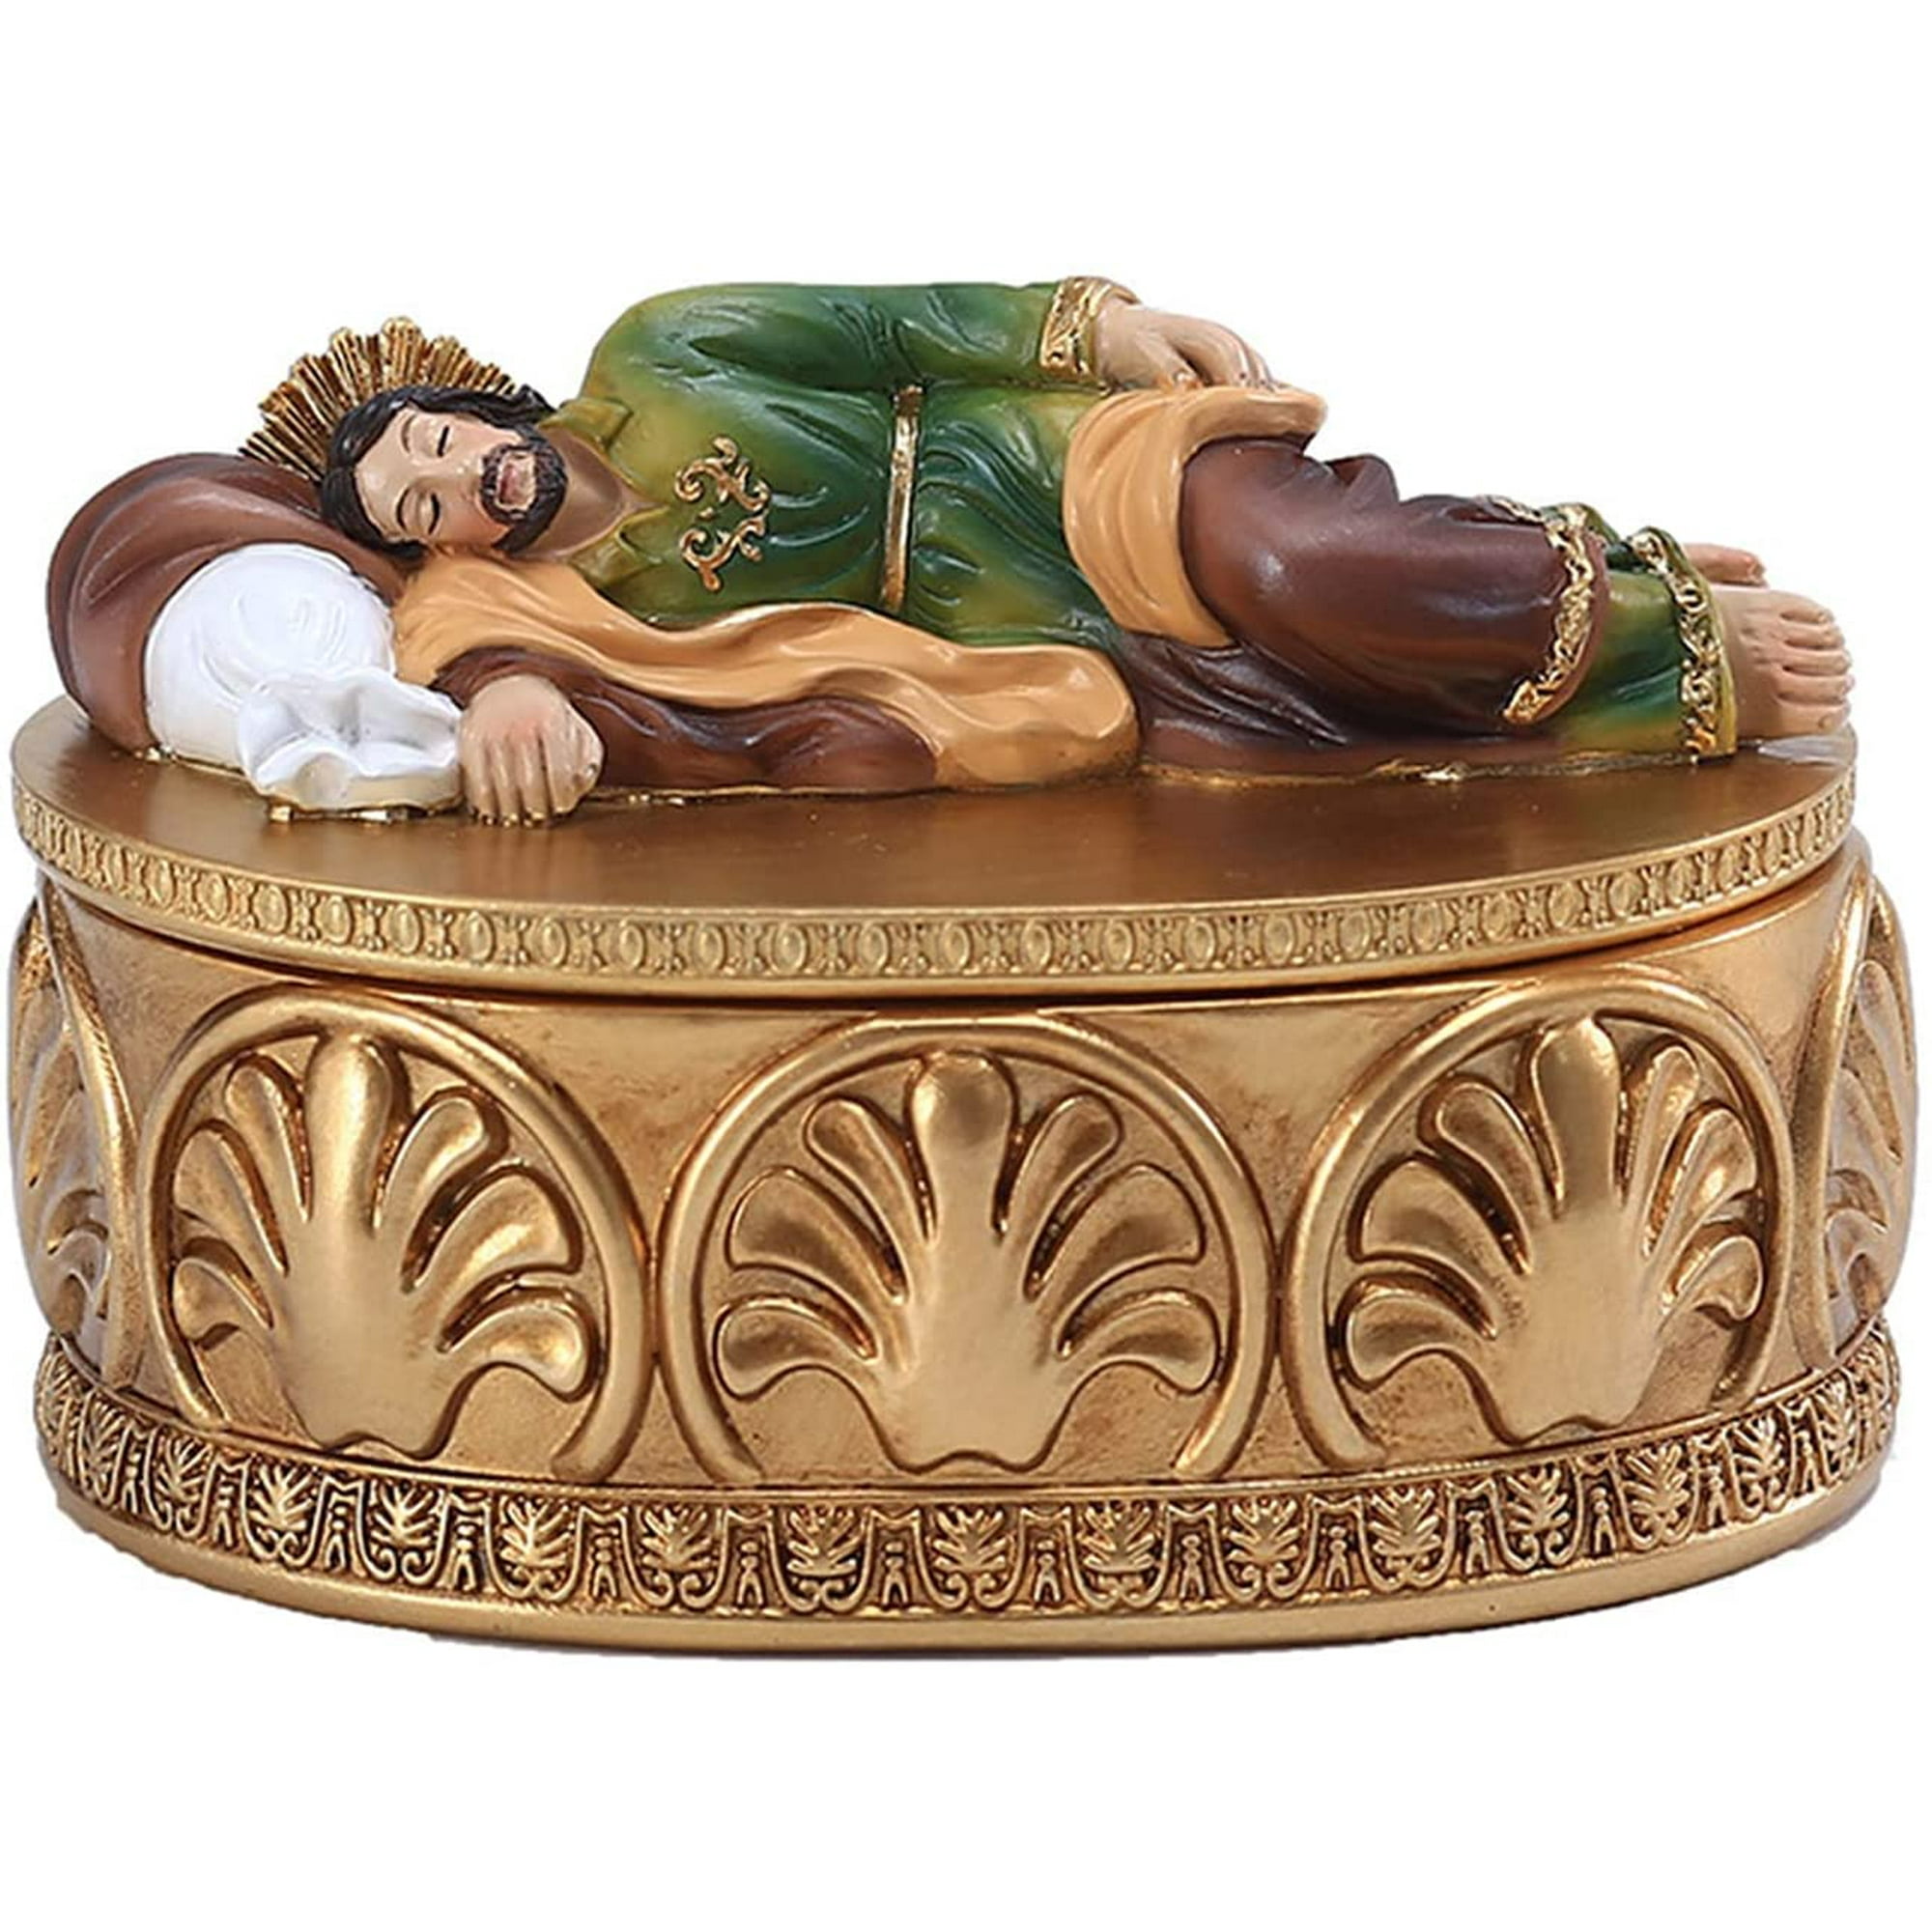 Statue de Saint Joseph endormi avec socle d'étagère, figurine